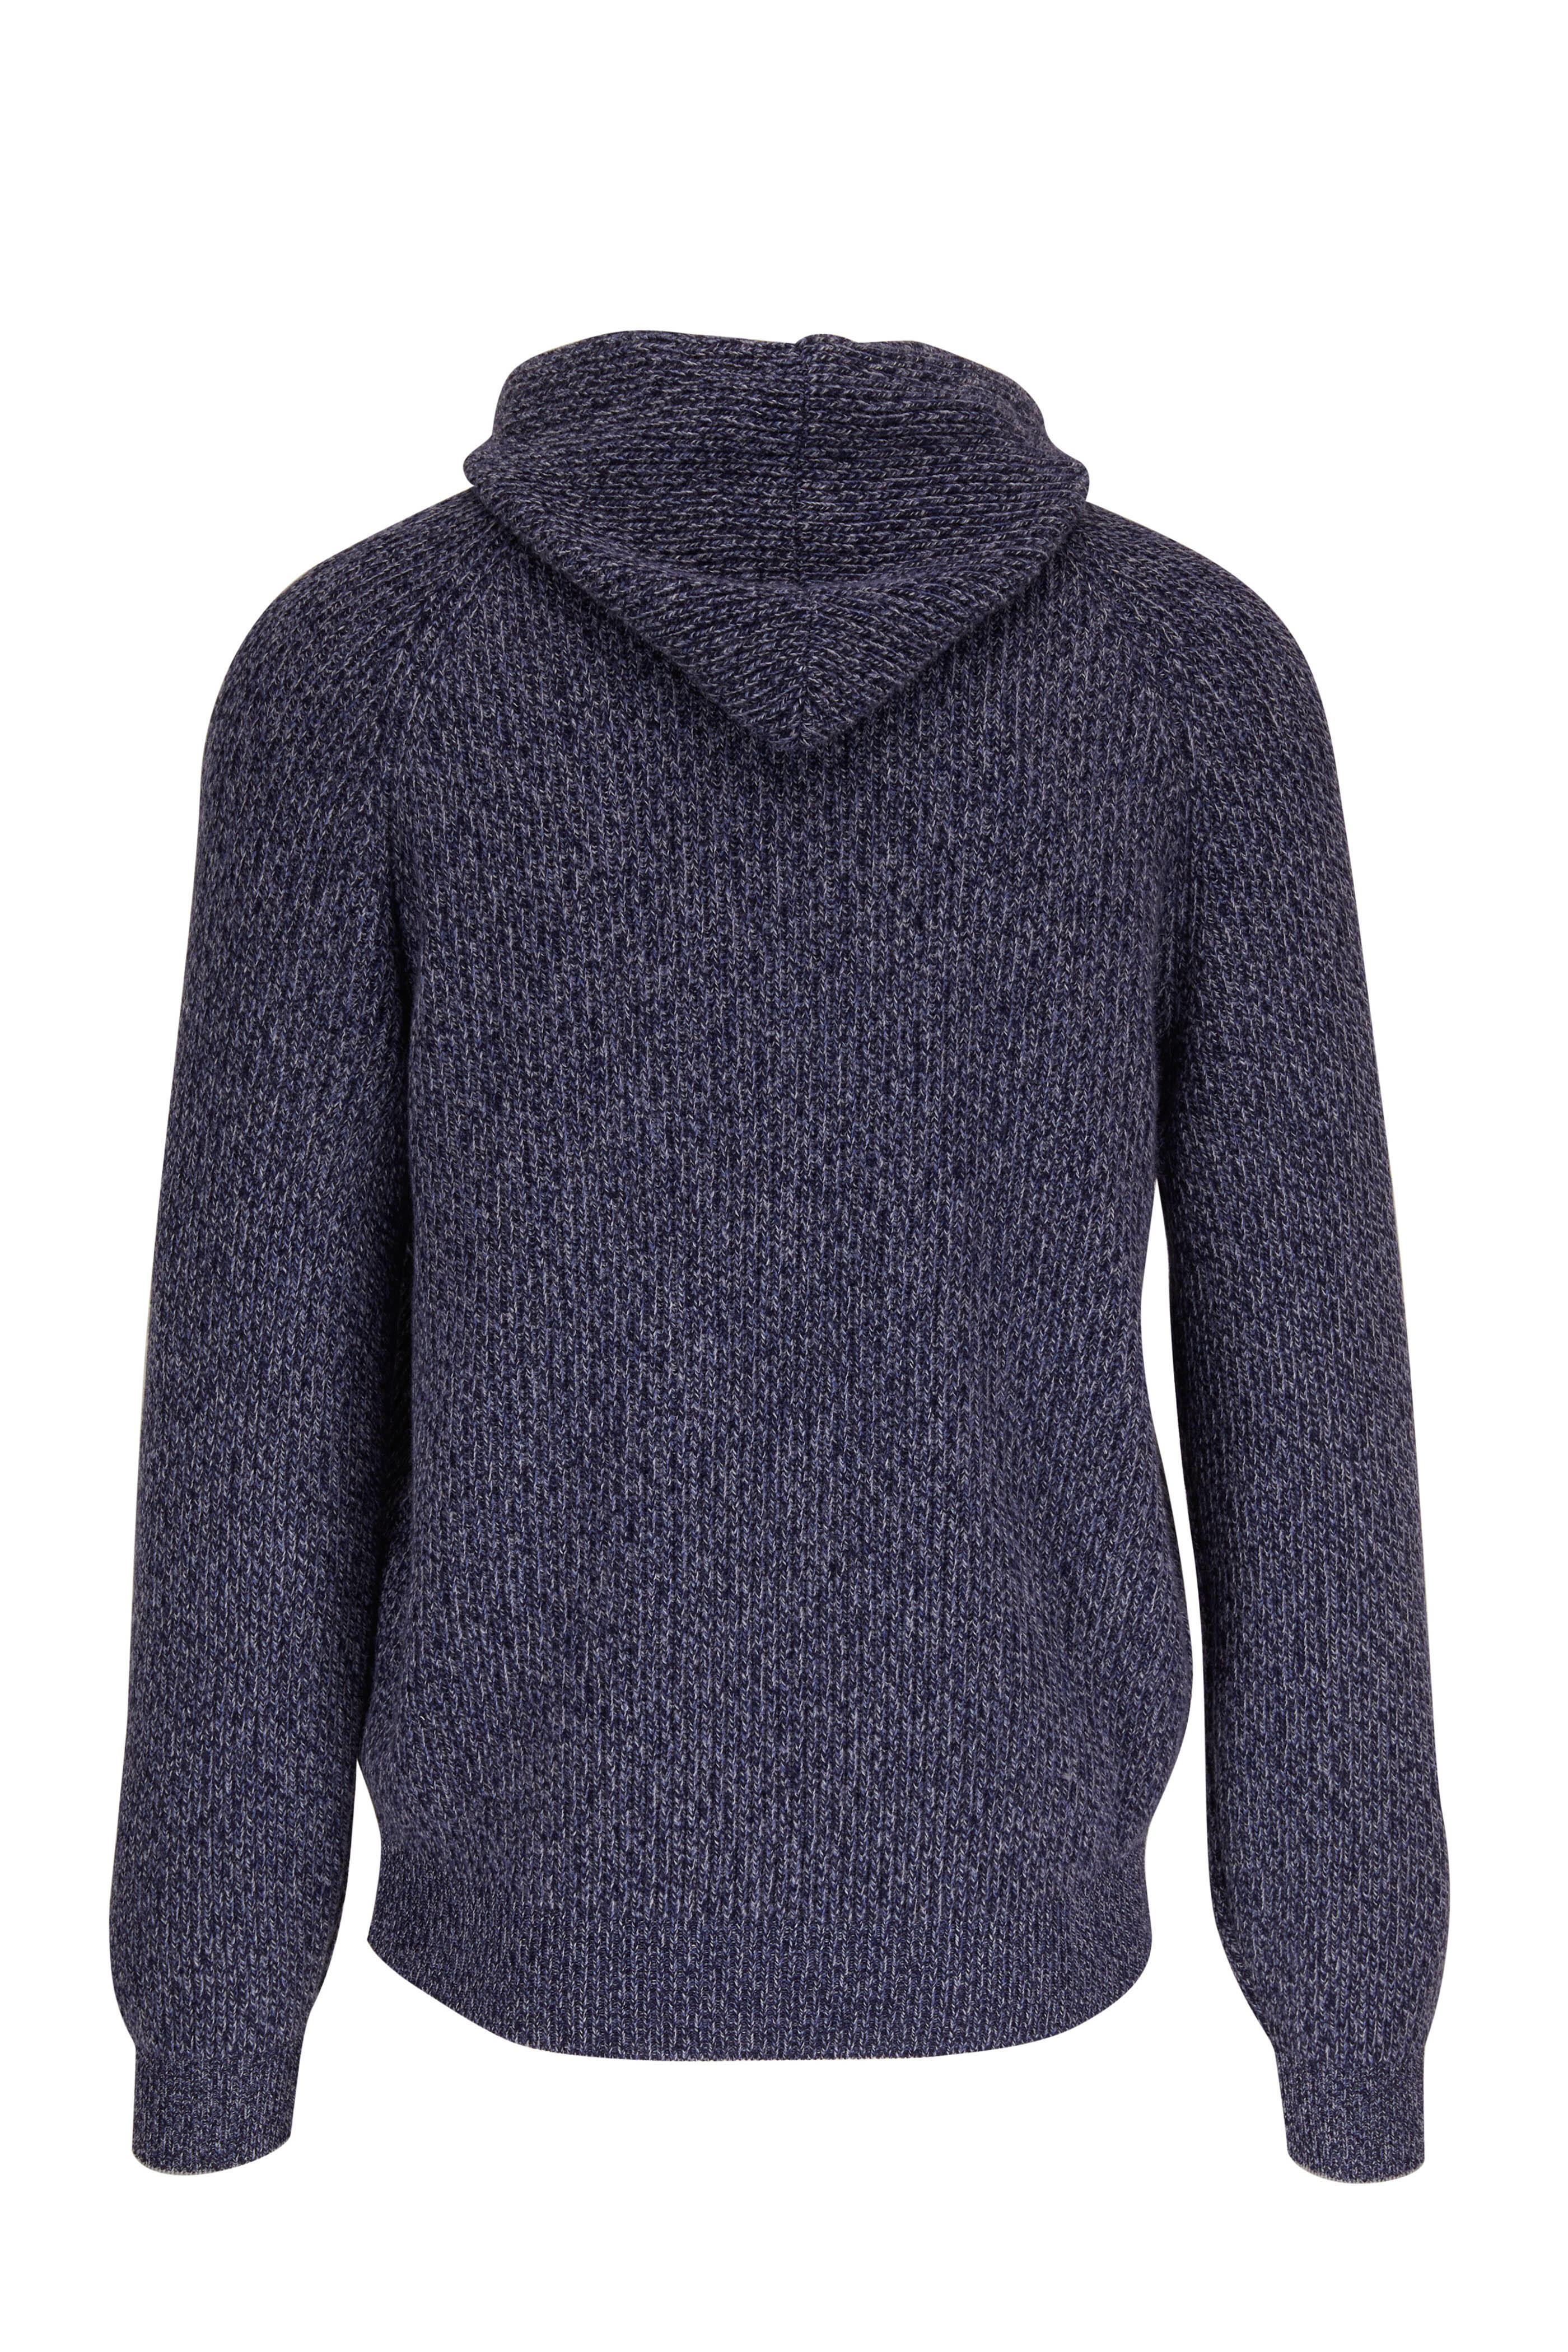 Brunello Cucinelli slogan-embroidered cotton hoodie - Blue